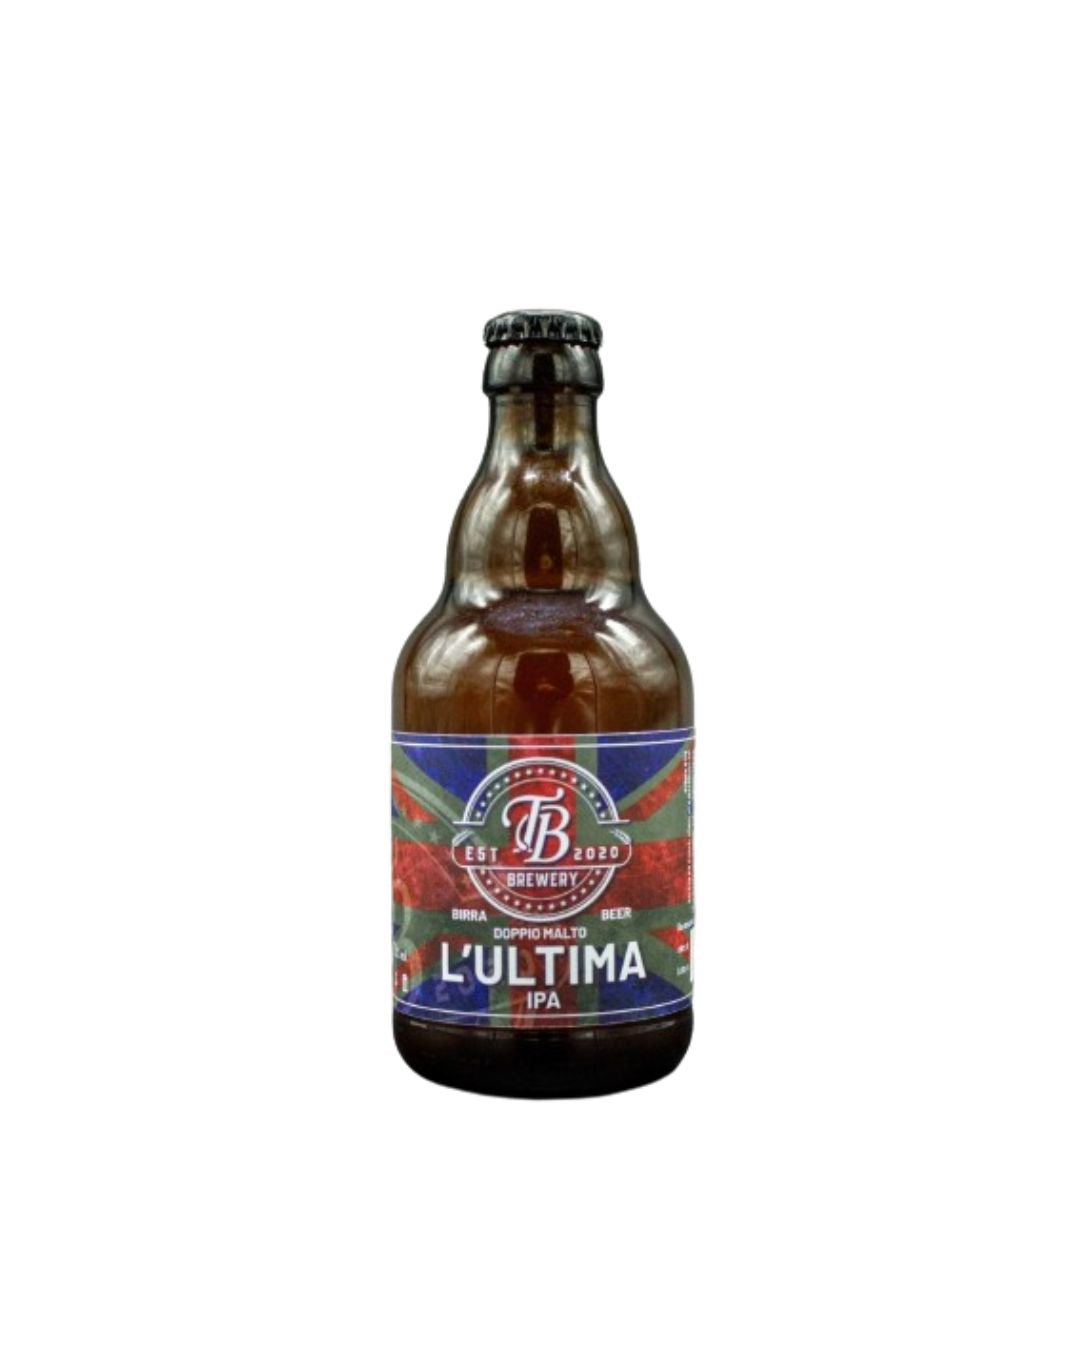 L’ultima - Ipa Vol. 7% - TB Brewery